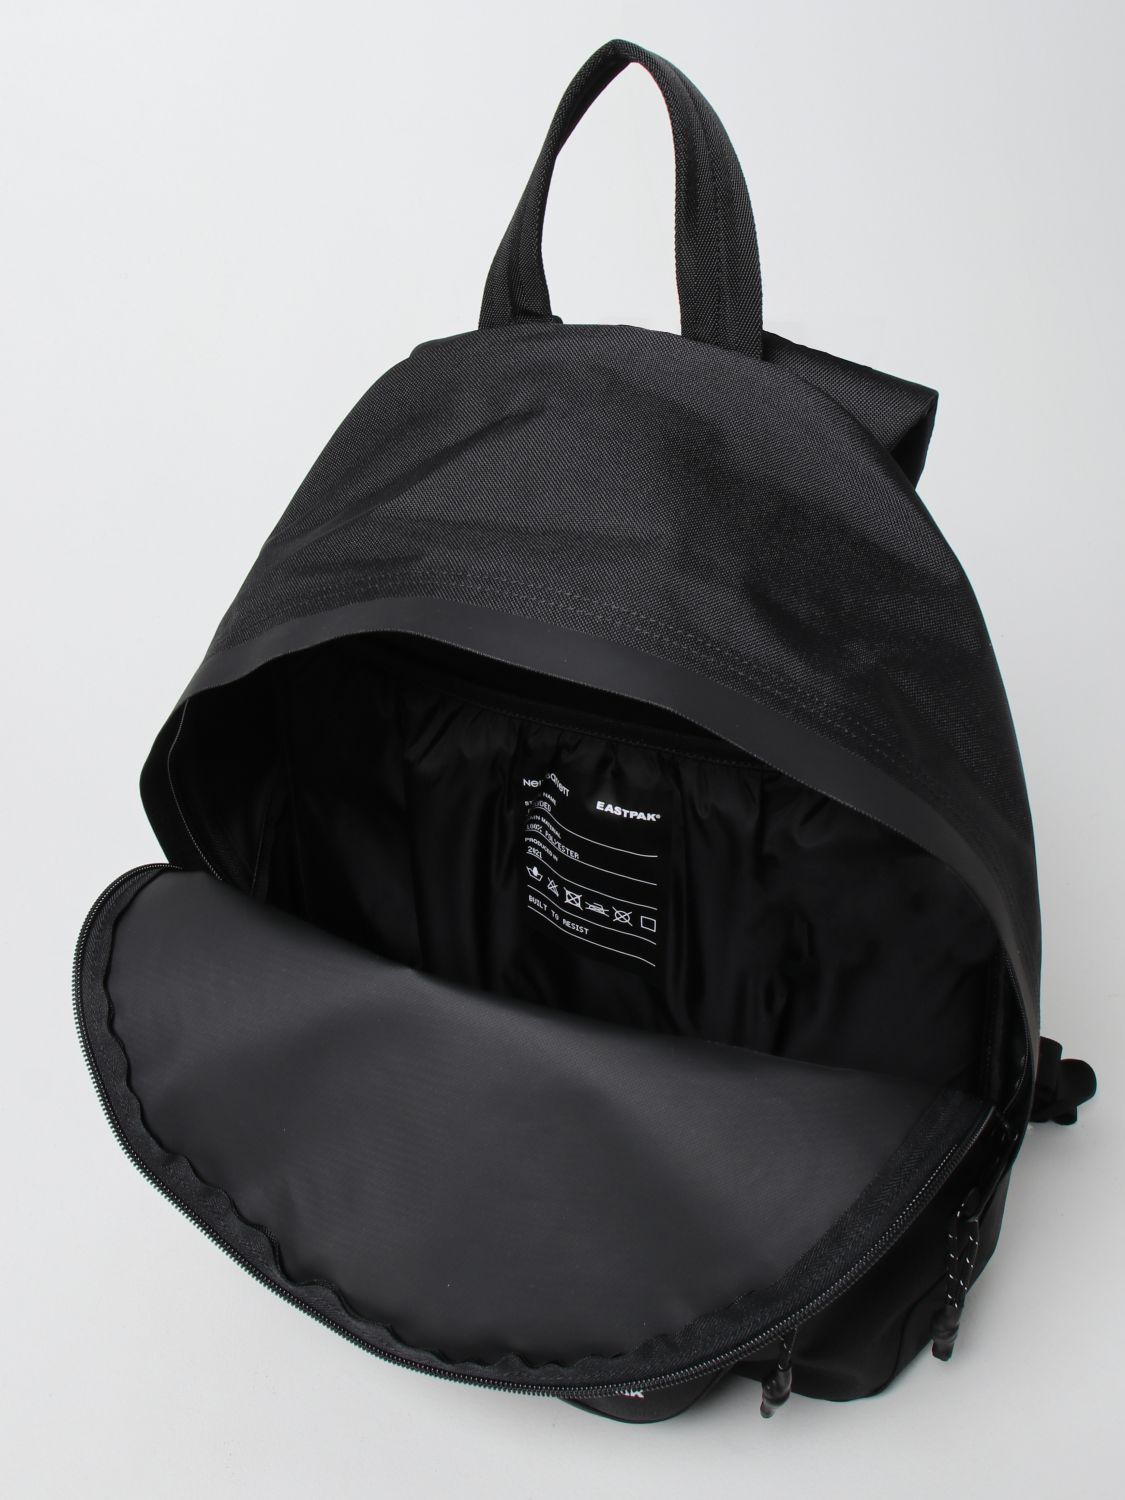 Backpack Neil Barrett: Neil Barrett x Eastpak rucksack in technical fabric black 4